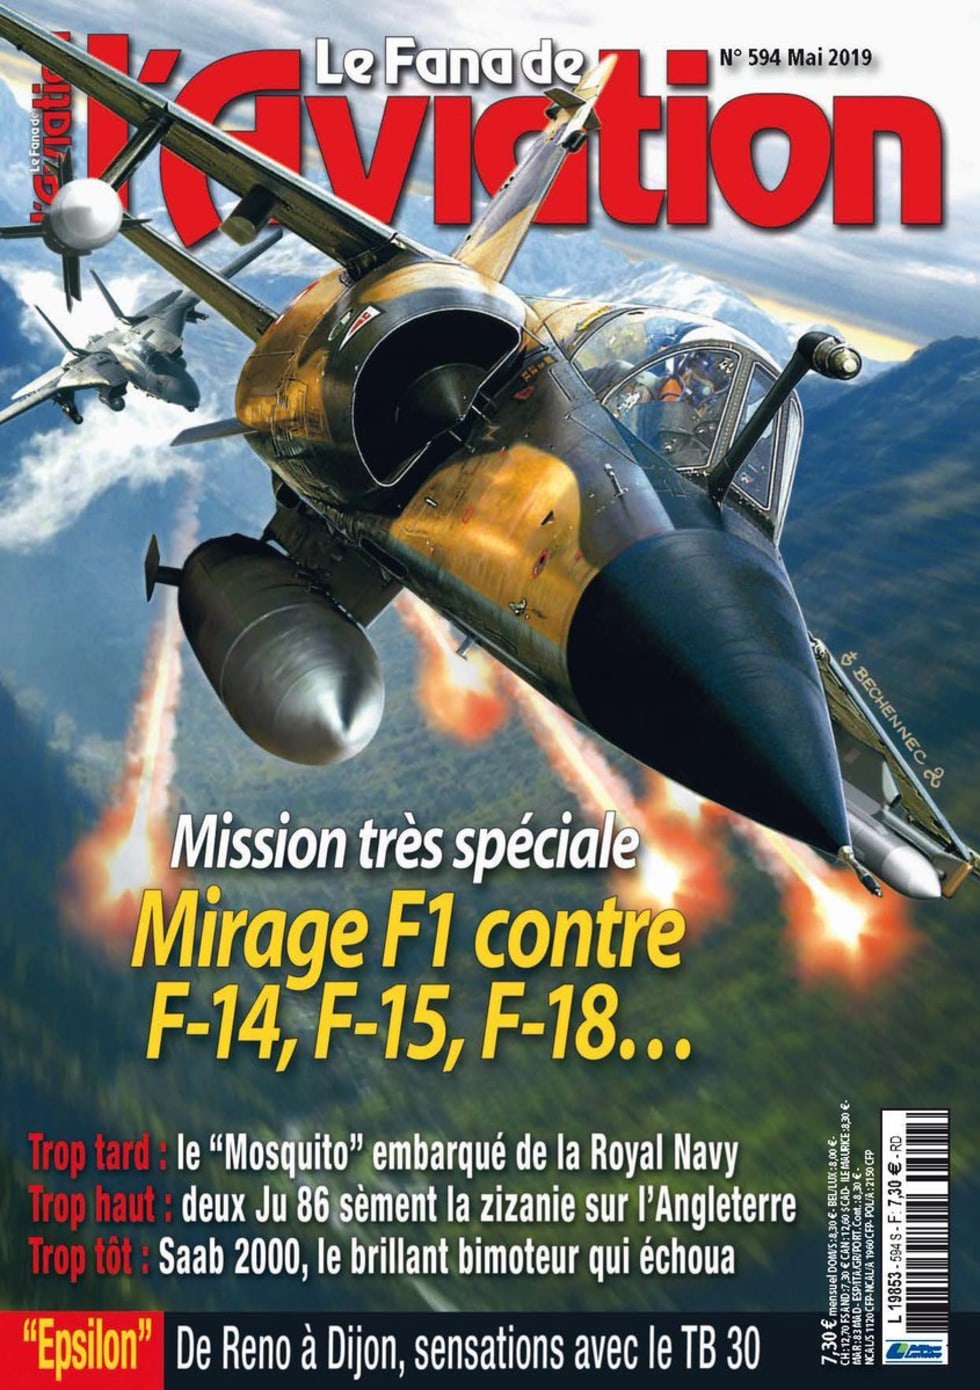 Le Fana de l’Aviation no. 594 cover page